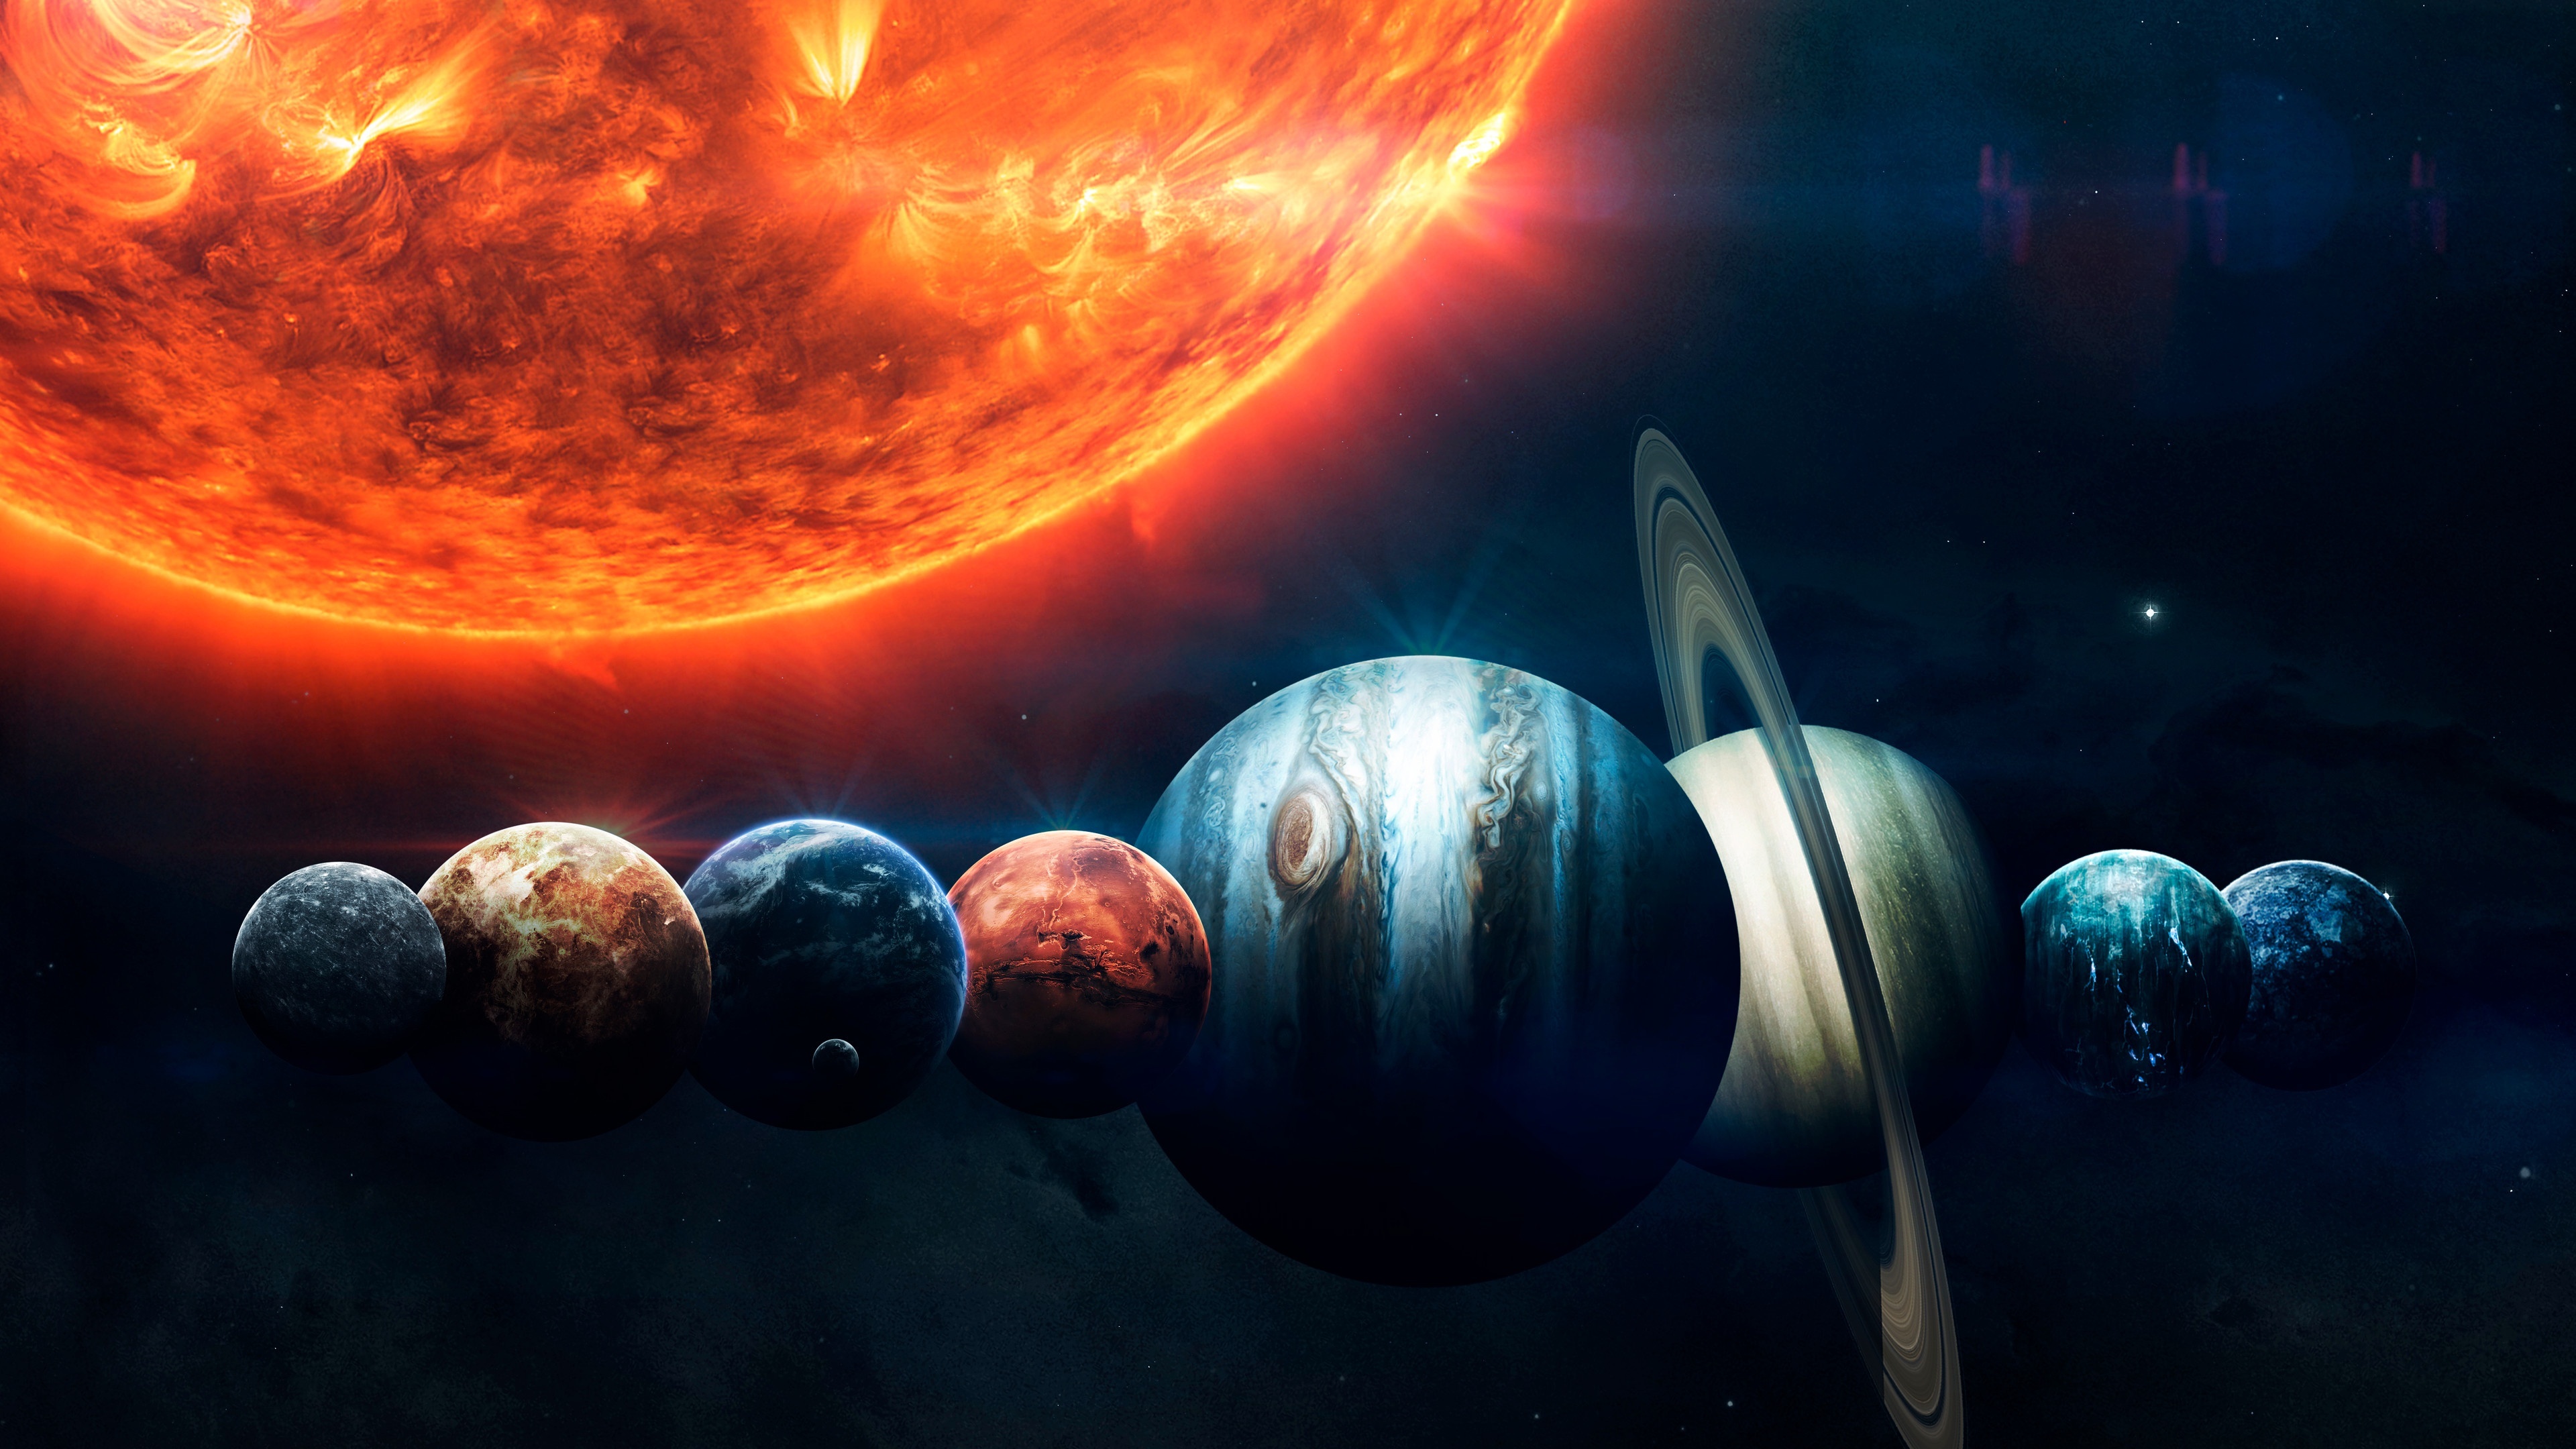 9 Planets, Solar system wallpaper, Stars, 3840x2160 4K Desktop